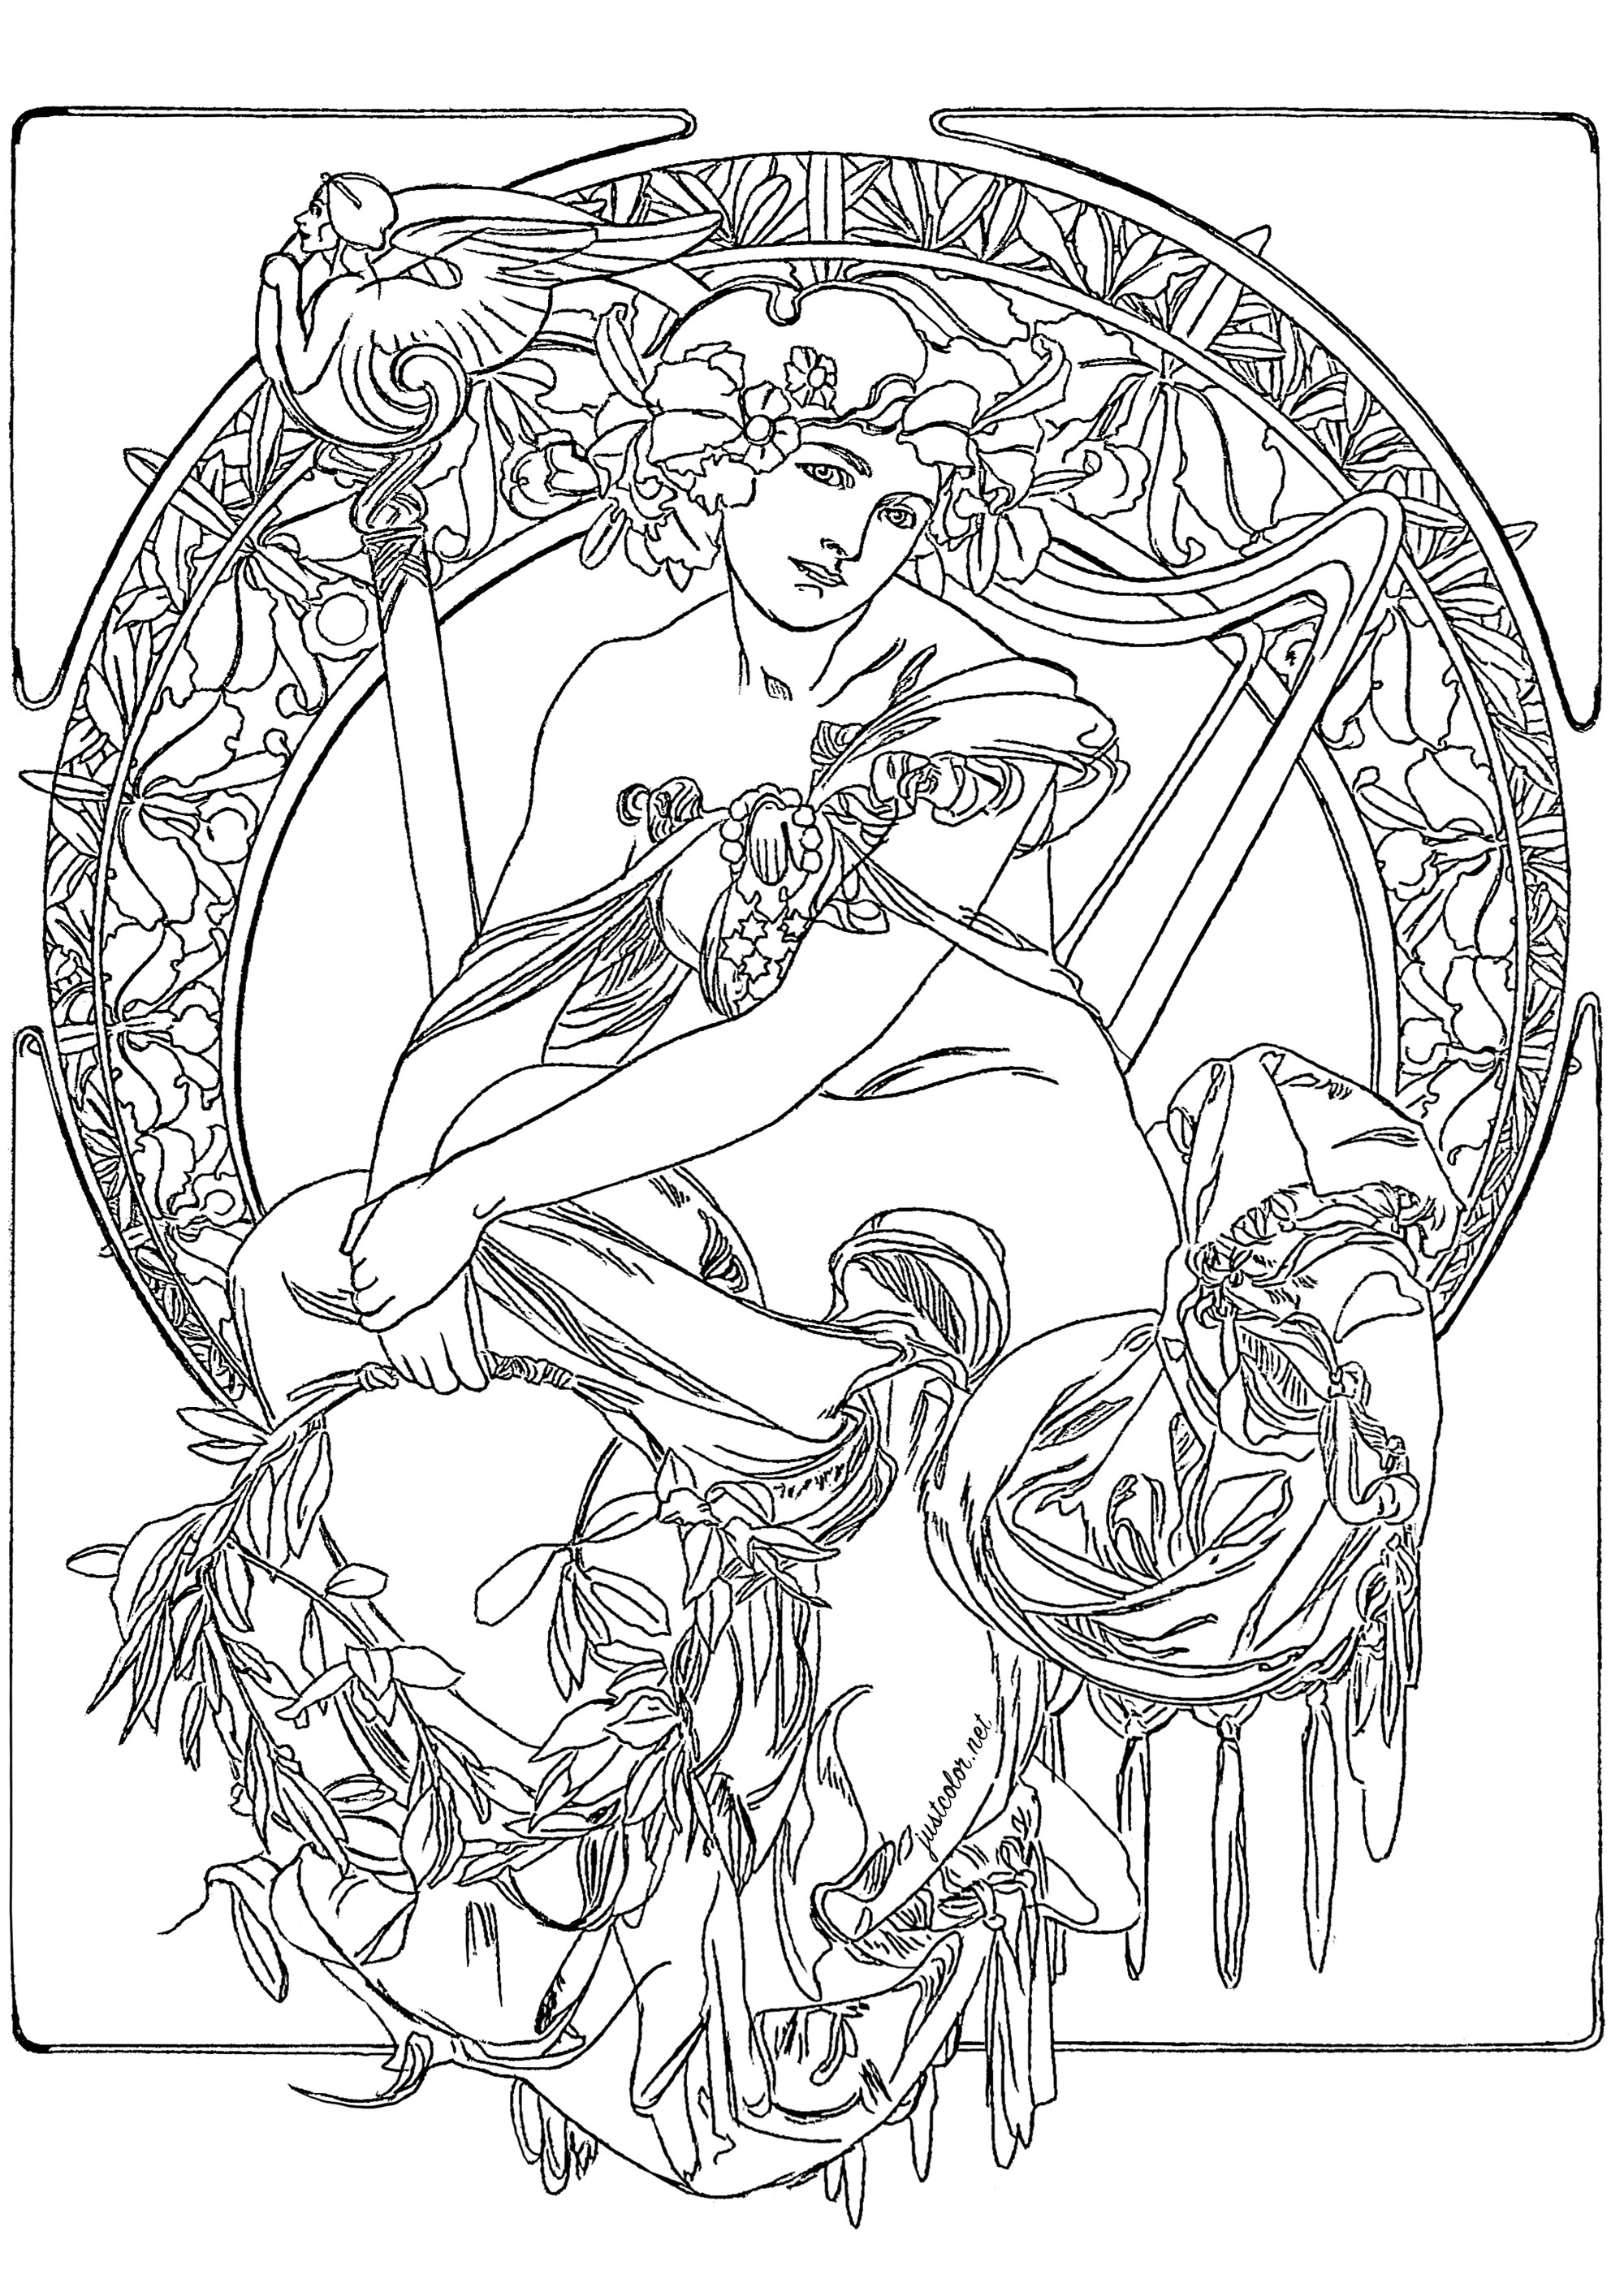 Alfons Mucha - Étude pour une affiche publicitaire (1900). La composition est basée sur un cercle central, entouré par une série de motifs floraux et géométriques. Dans le cercle central, on peut voir un personnage féminin, dont les vêtements sont ornés de motifs floraux et d'une couronne de feuilles et de fleurs. Même s'il s'agit d'un croquis, les détails sont très précis et reflètent la finesse et le souci du détail de Mucha. (Le dessin original a été légèrement retravaillé pour permettre de le colorier)